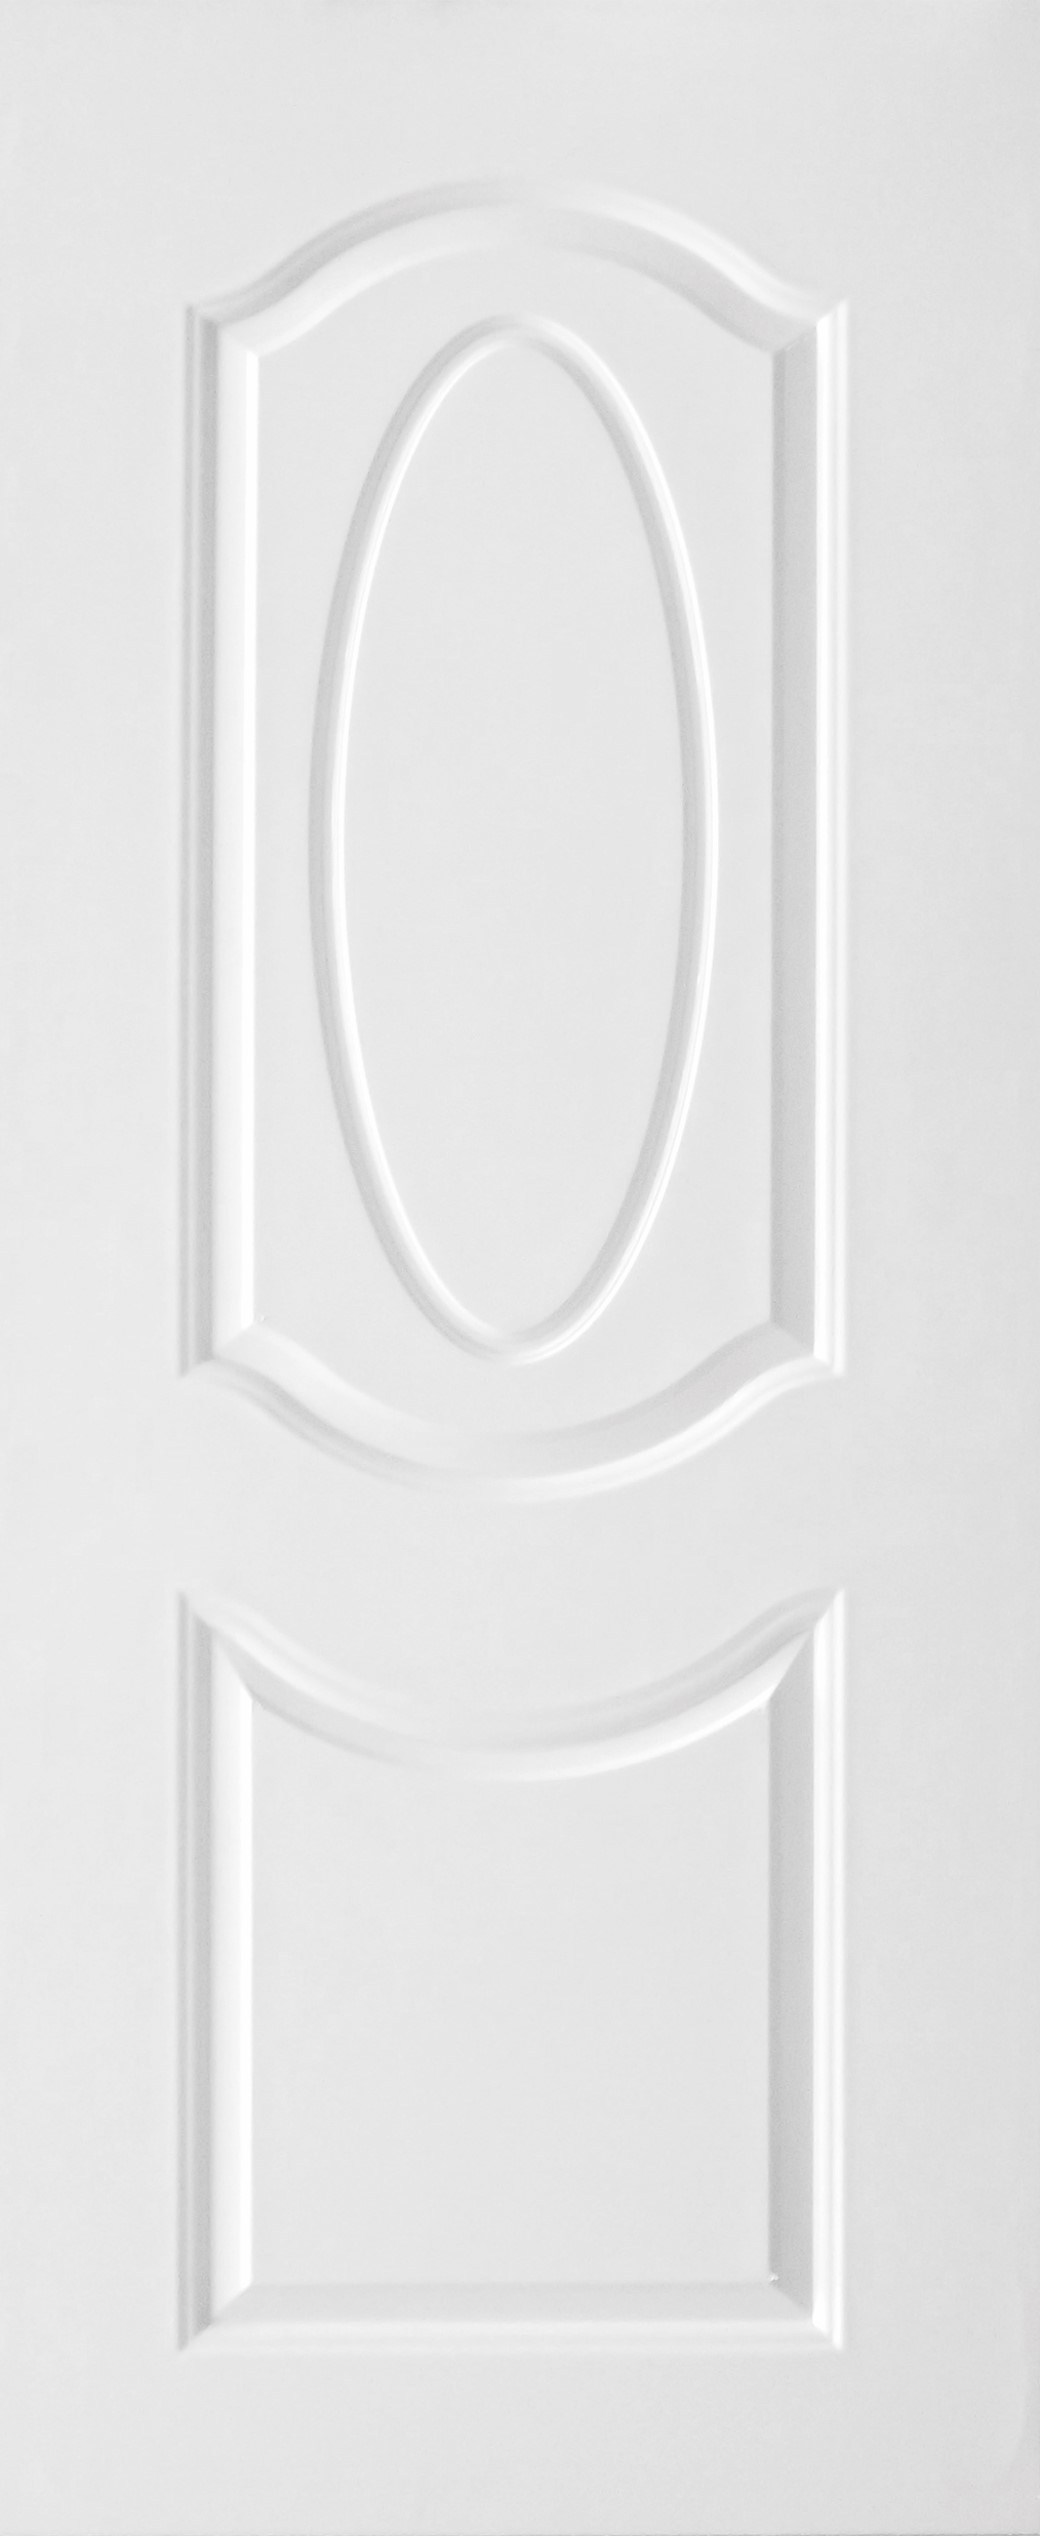 ประตู uPVC รุ่นภายนอก EXTERA สีขาว ลายไม้ บานลูกฟัก 2 ช่องโค้ง